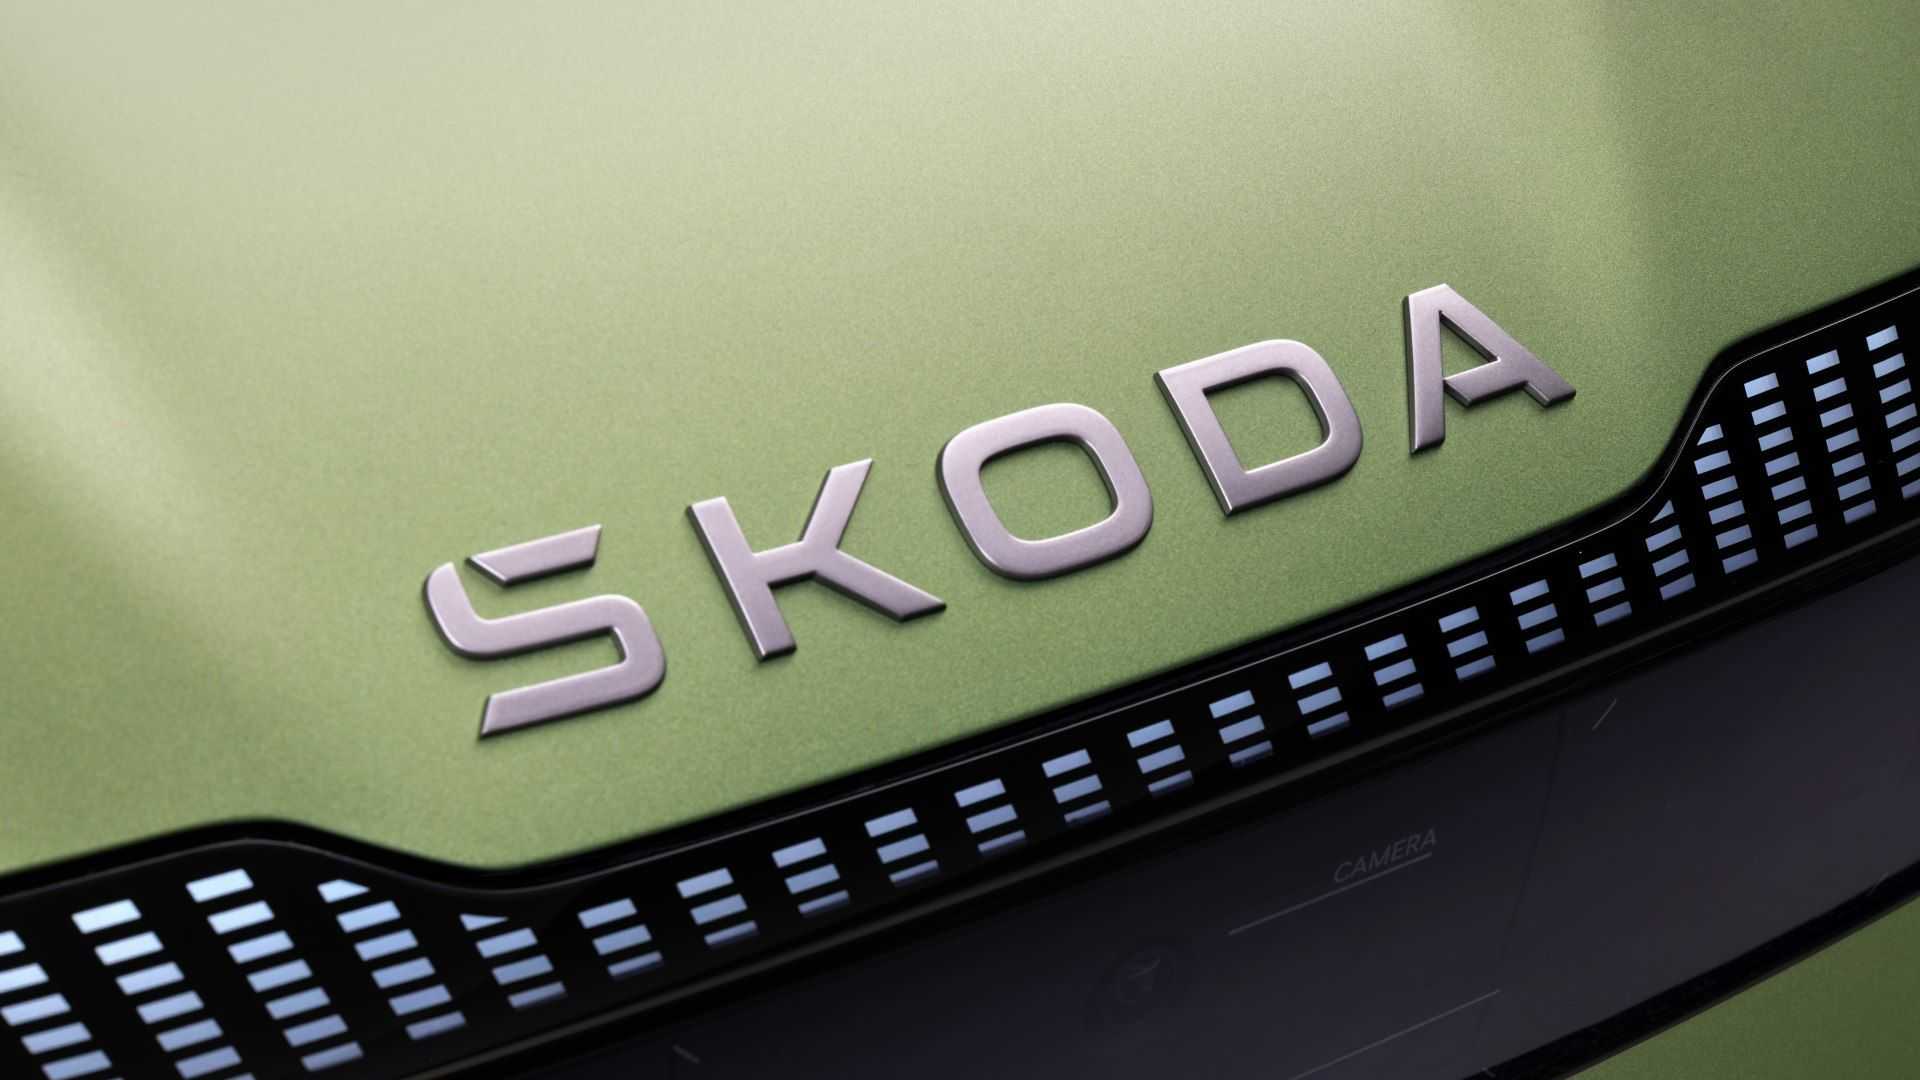 Skoda разкри ново лого и идентичност на марката